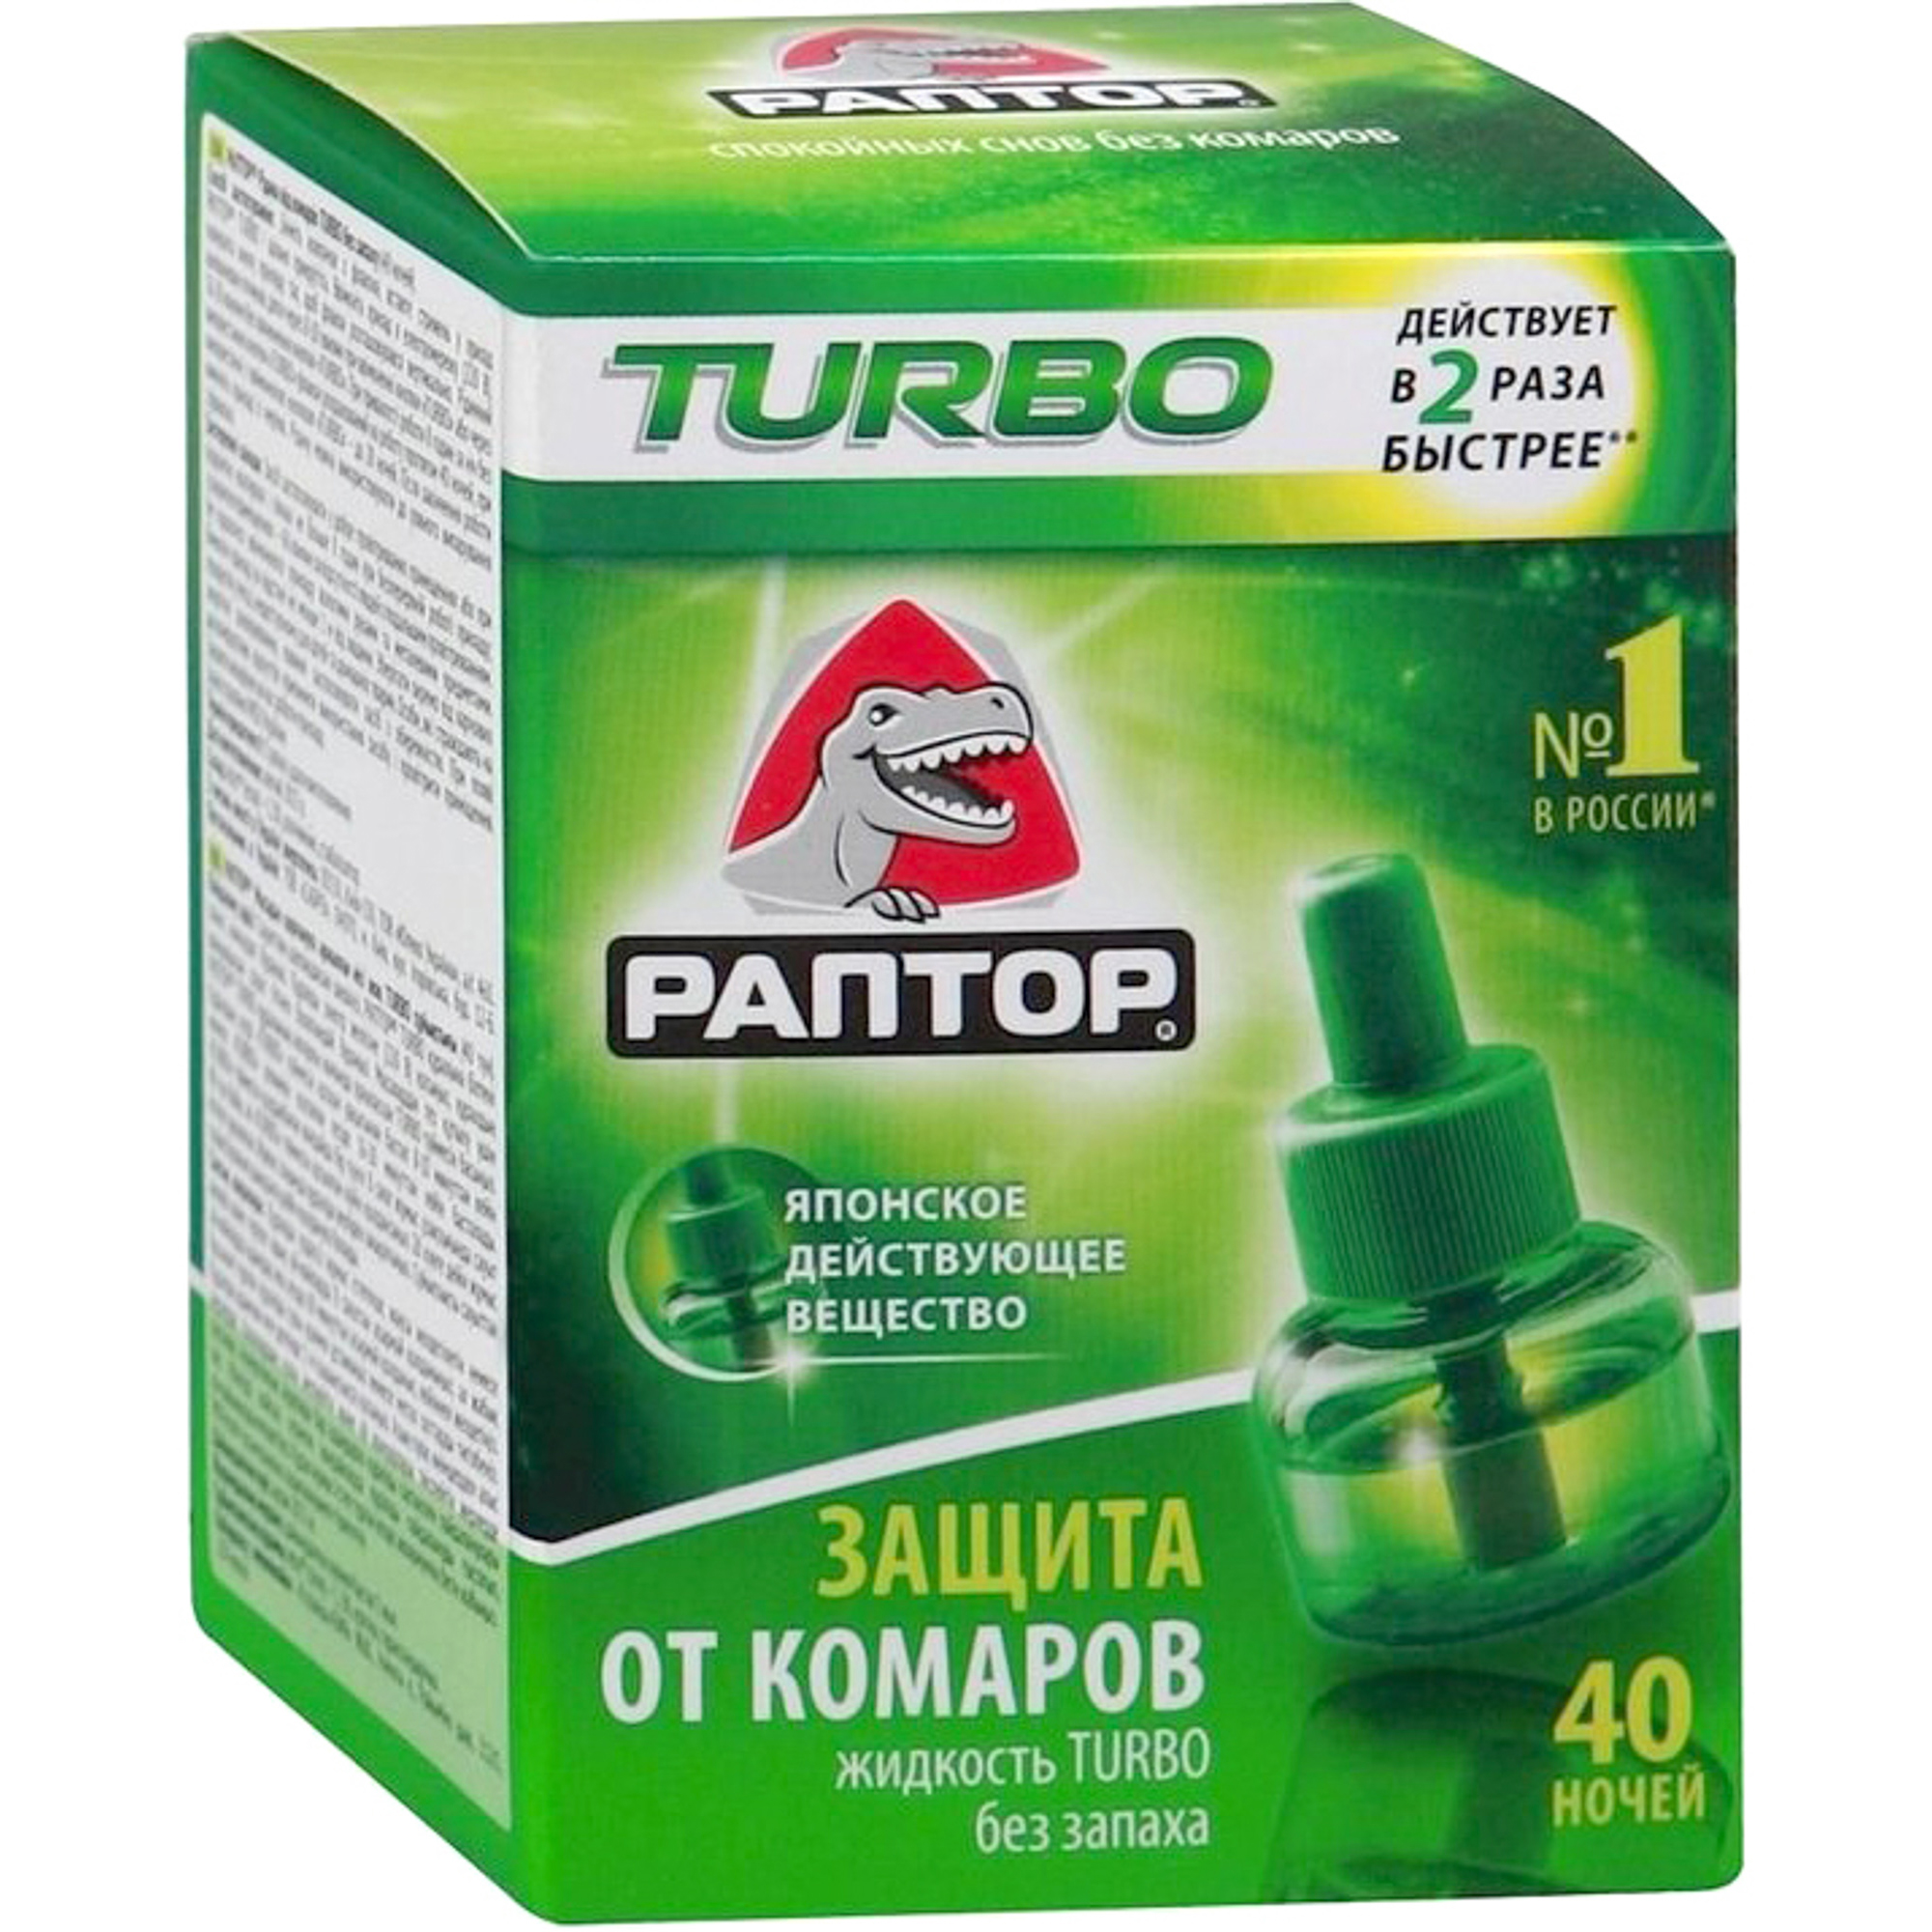 Жидкость от комаров Раптор TURBO, 40 ночей цена и фото